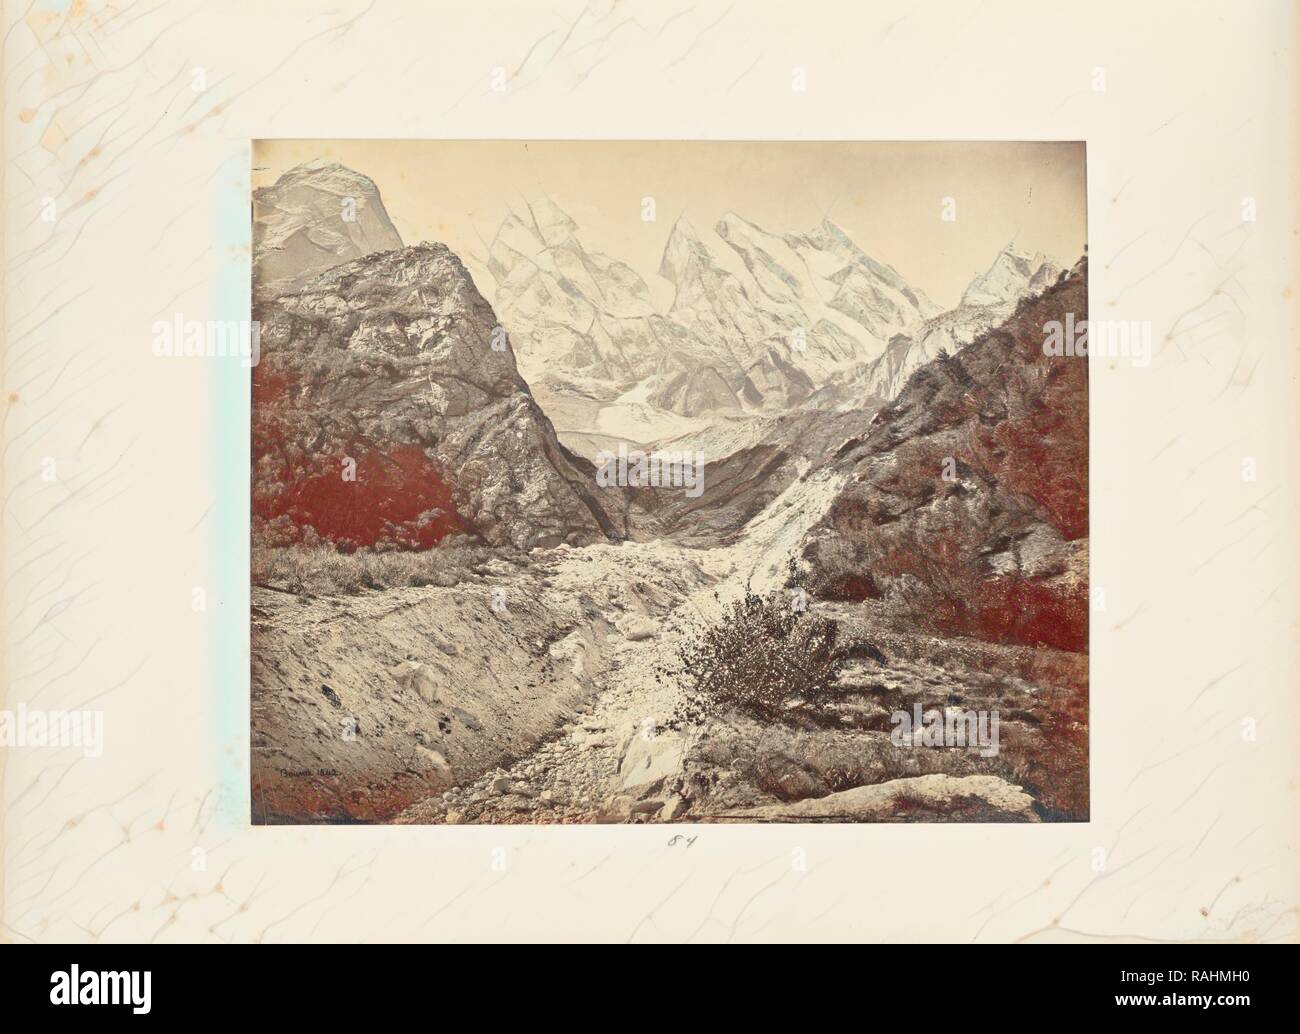 Sommets enneigés près du glacier d'Gangootri, Samuel Bourne (anglais, 1834 - 1912), Uttarakhand, Inde, vers 1866, d'albumen repensé Banque D'Images